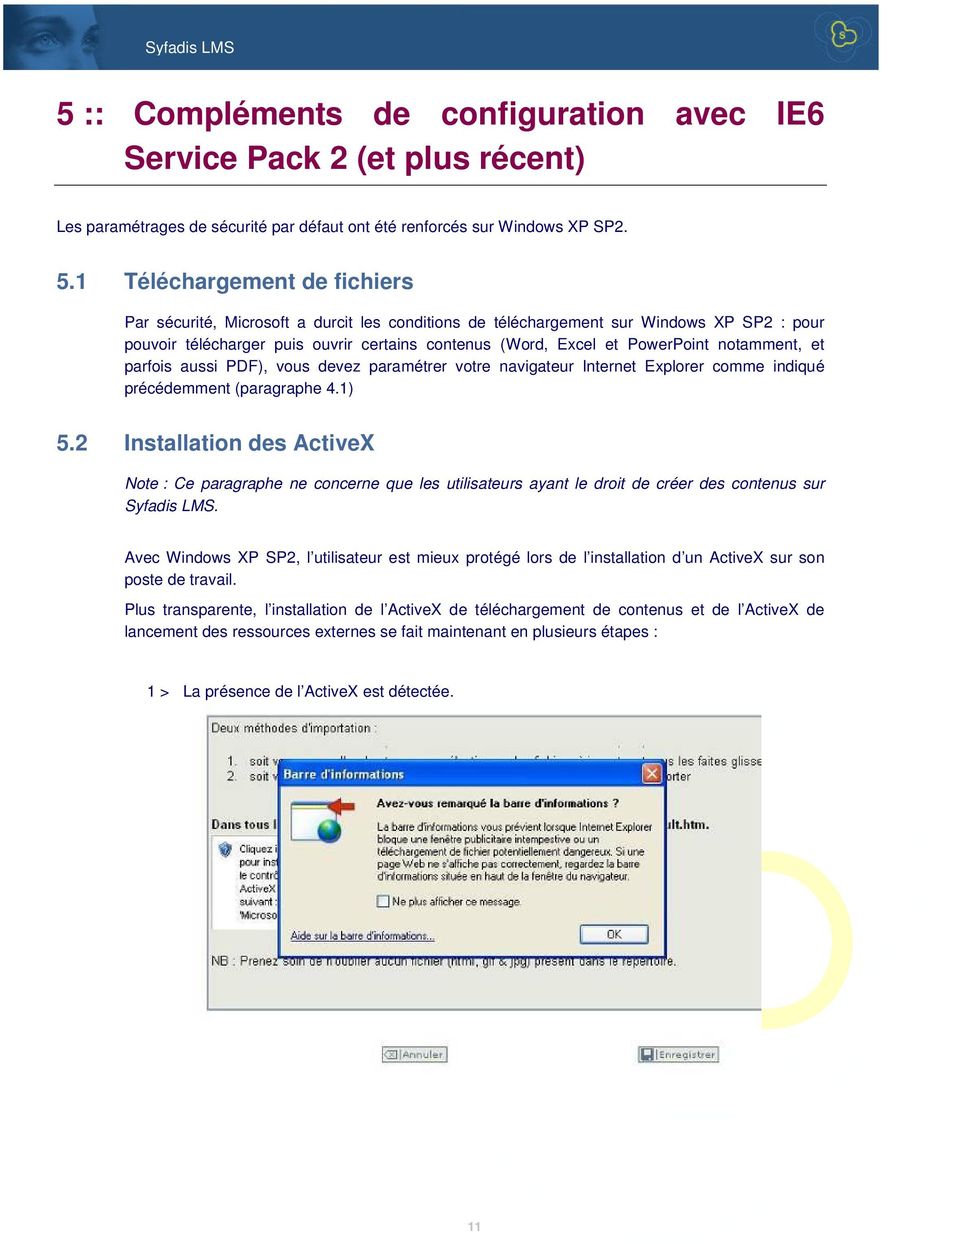 notamment, et parfois aussi PDF), vous devez paramétrer votre navigateur Internet Explorer comme indiqué précédemment (paragraphe 4.1) 5.